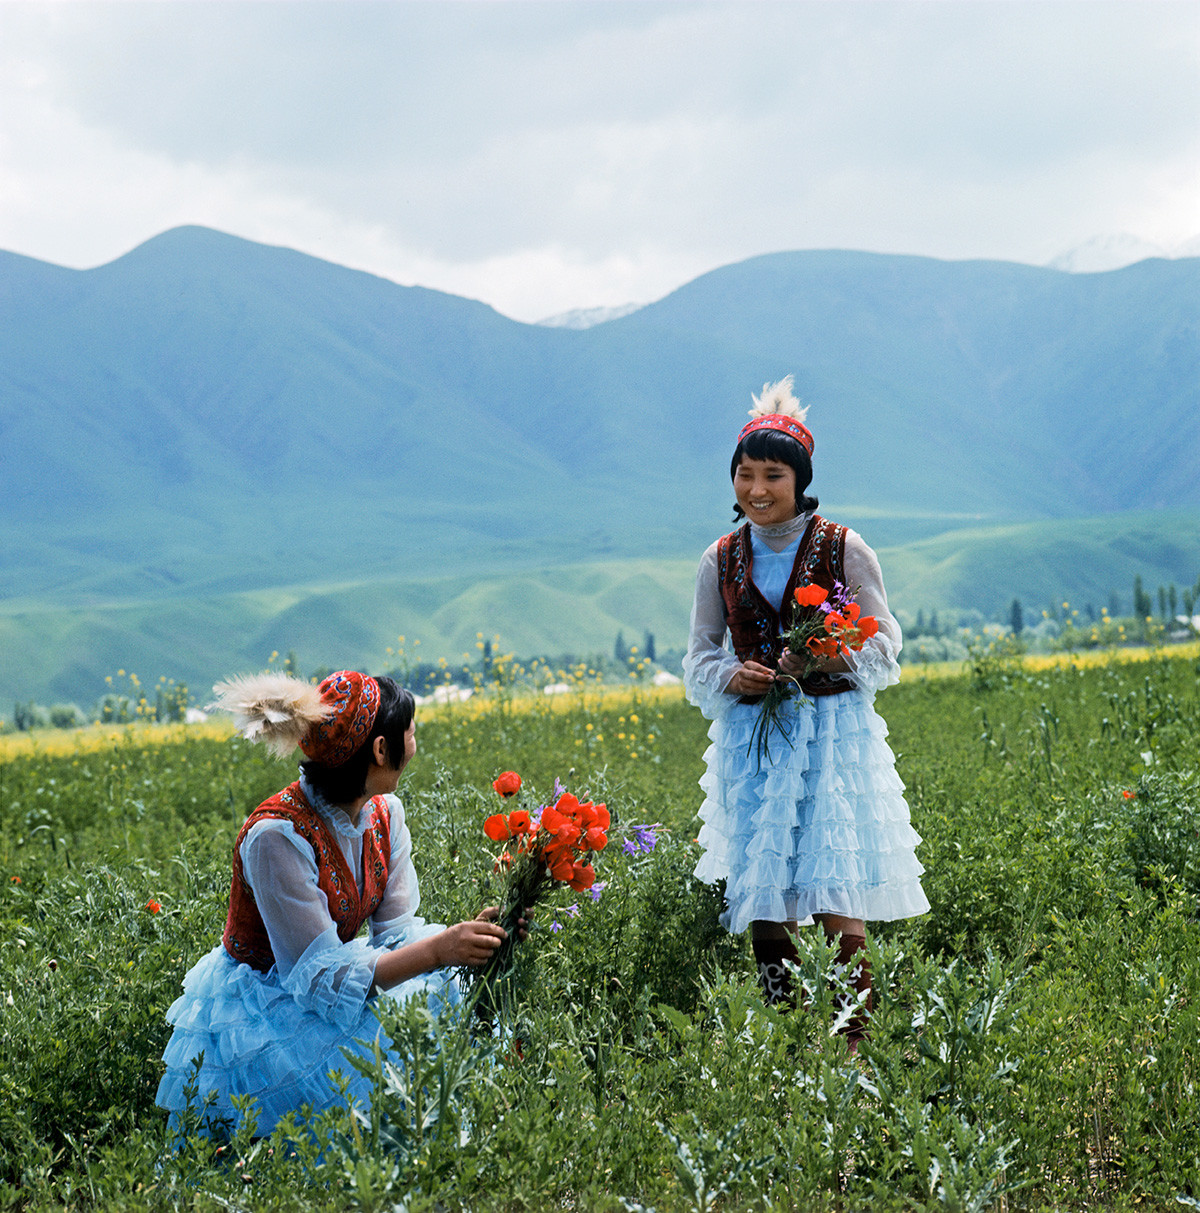 キルギス人伝統衣装をつけた女性たち